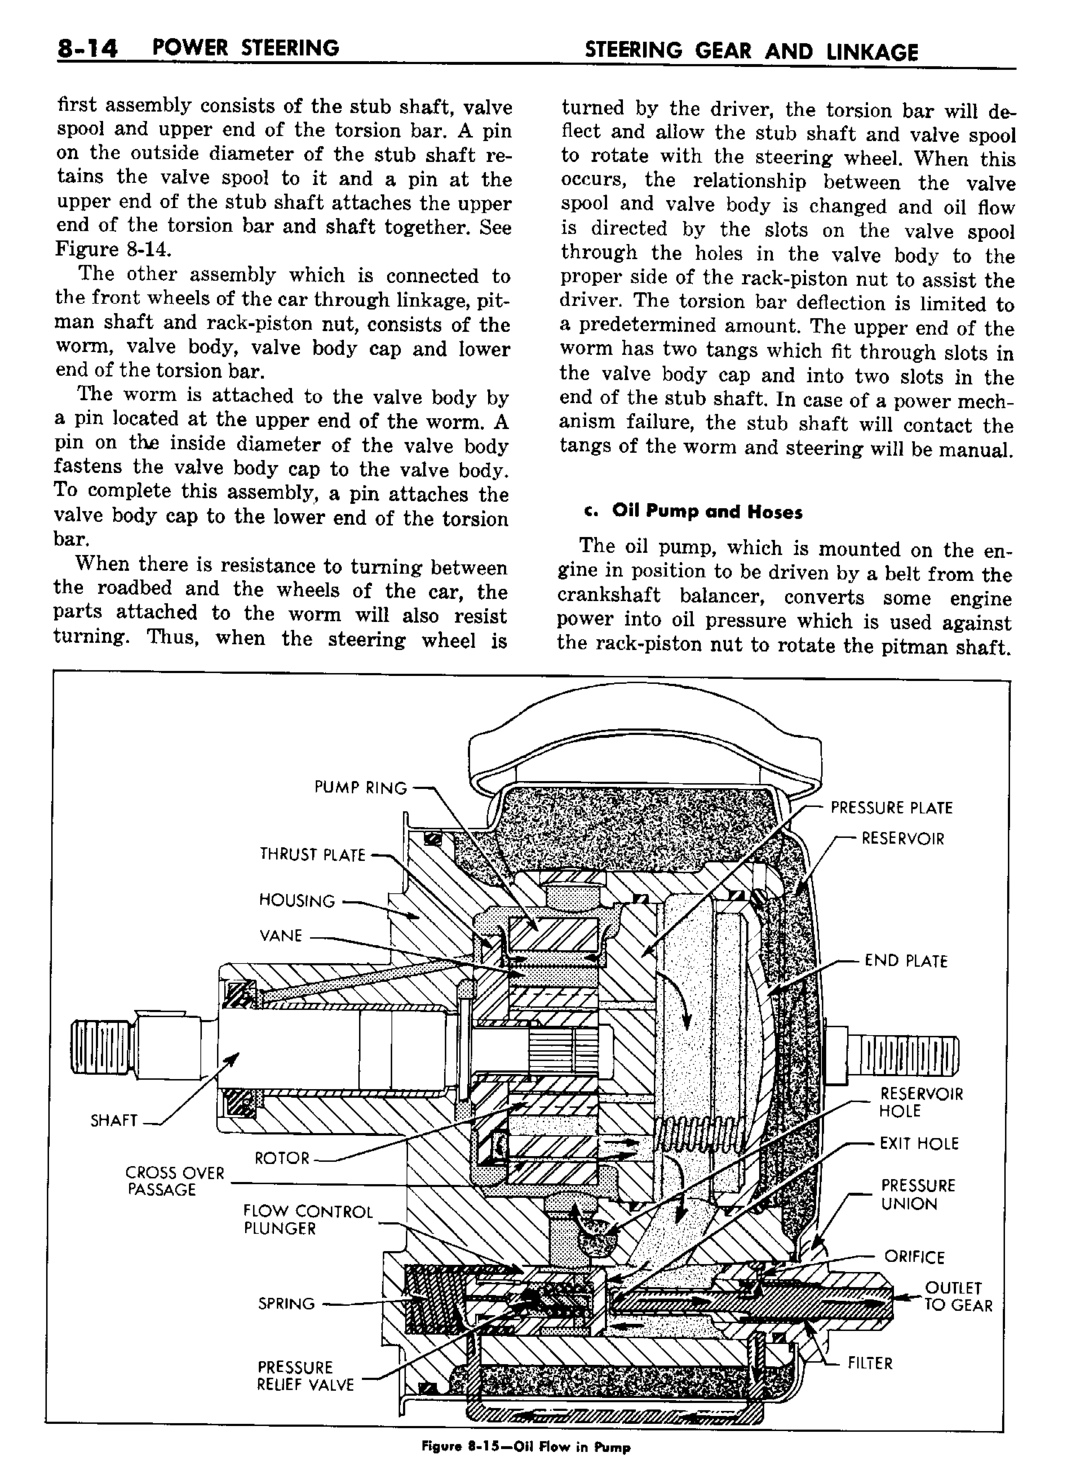 n_09 1960 Buick Shop Manual - Steering-014-014.jpg